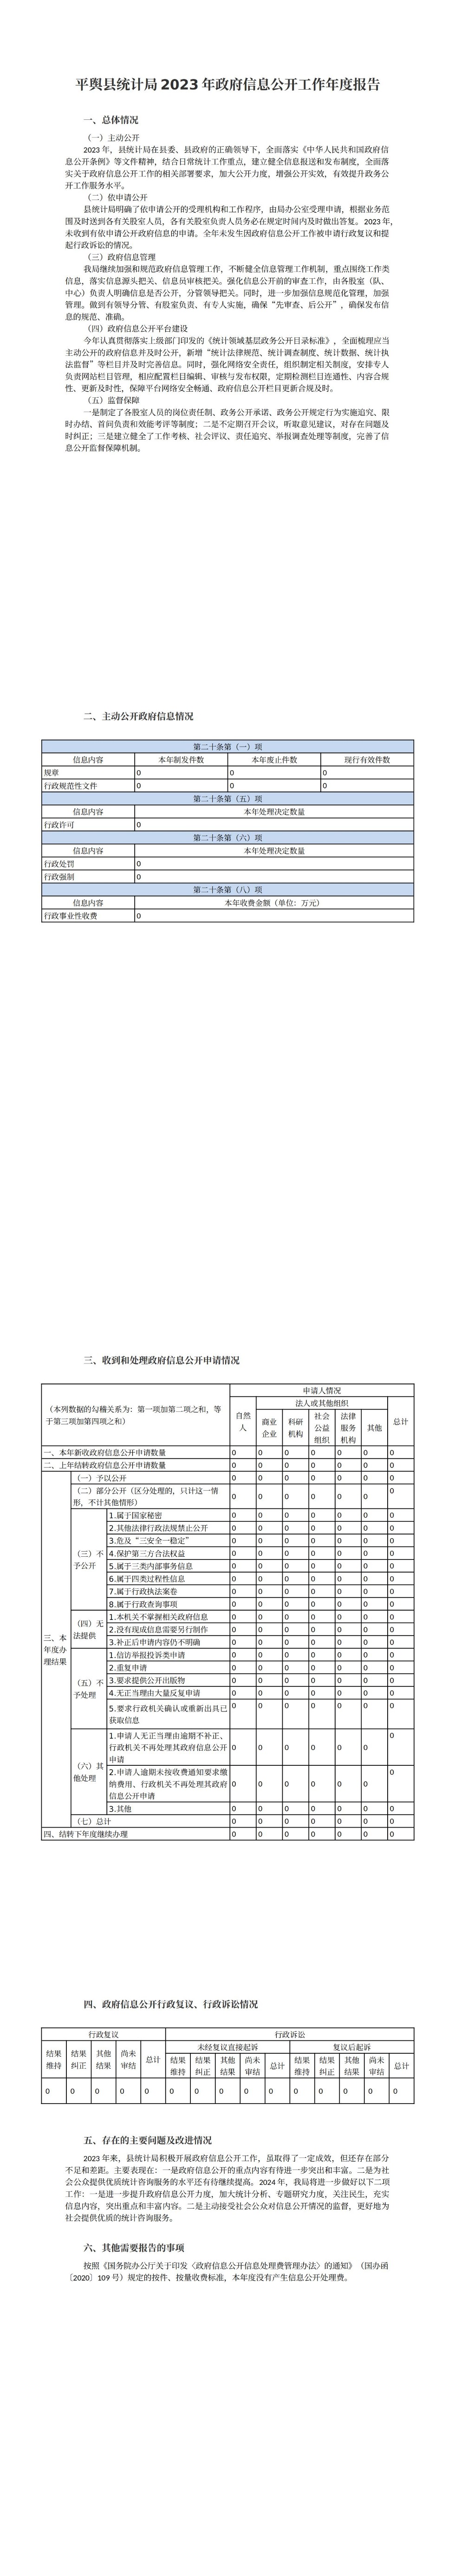 平舆县统计局2023年政府信息公开工作年度报告_00.jpg